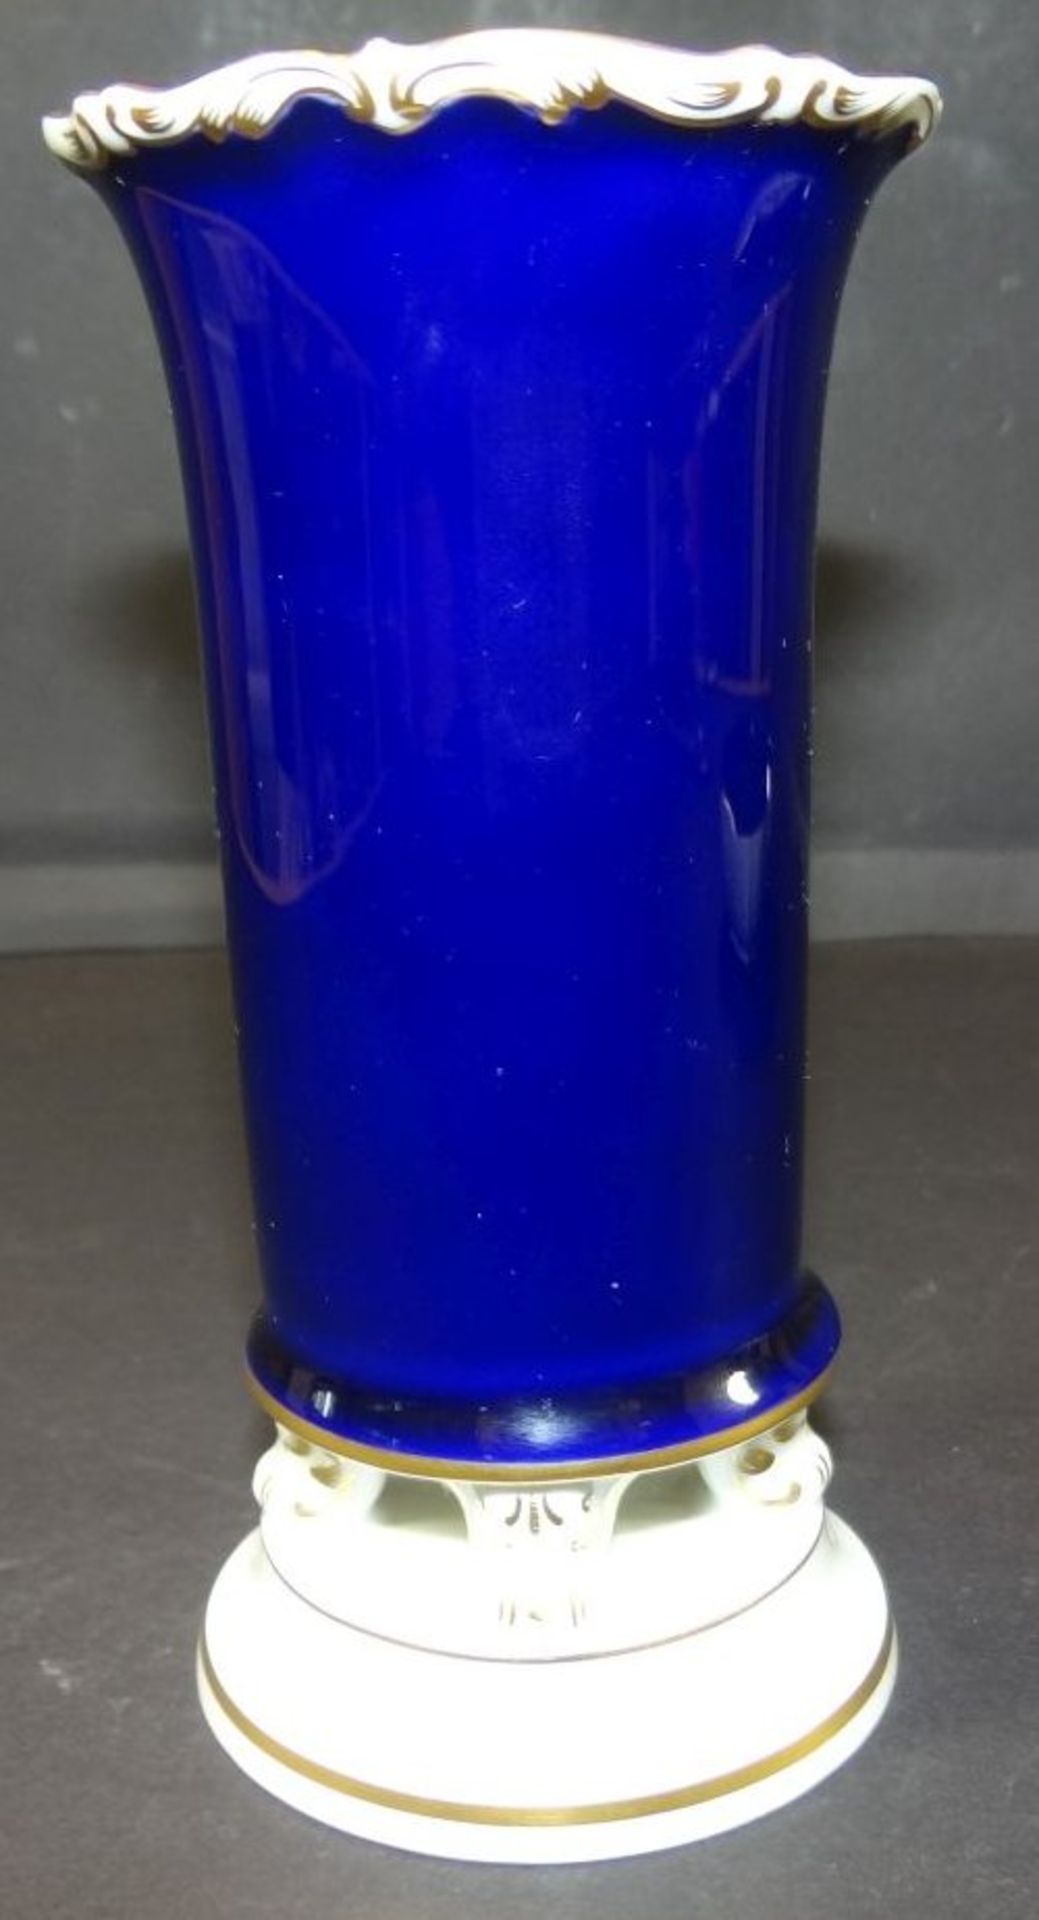 kl. Orunkvase "Meissen" Kobalt mit Blumenbouquet, H-14 cm, D-7 cm, am Stand kl. Klebestelle, 1.Wahl - Bild 4 aus 6